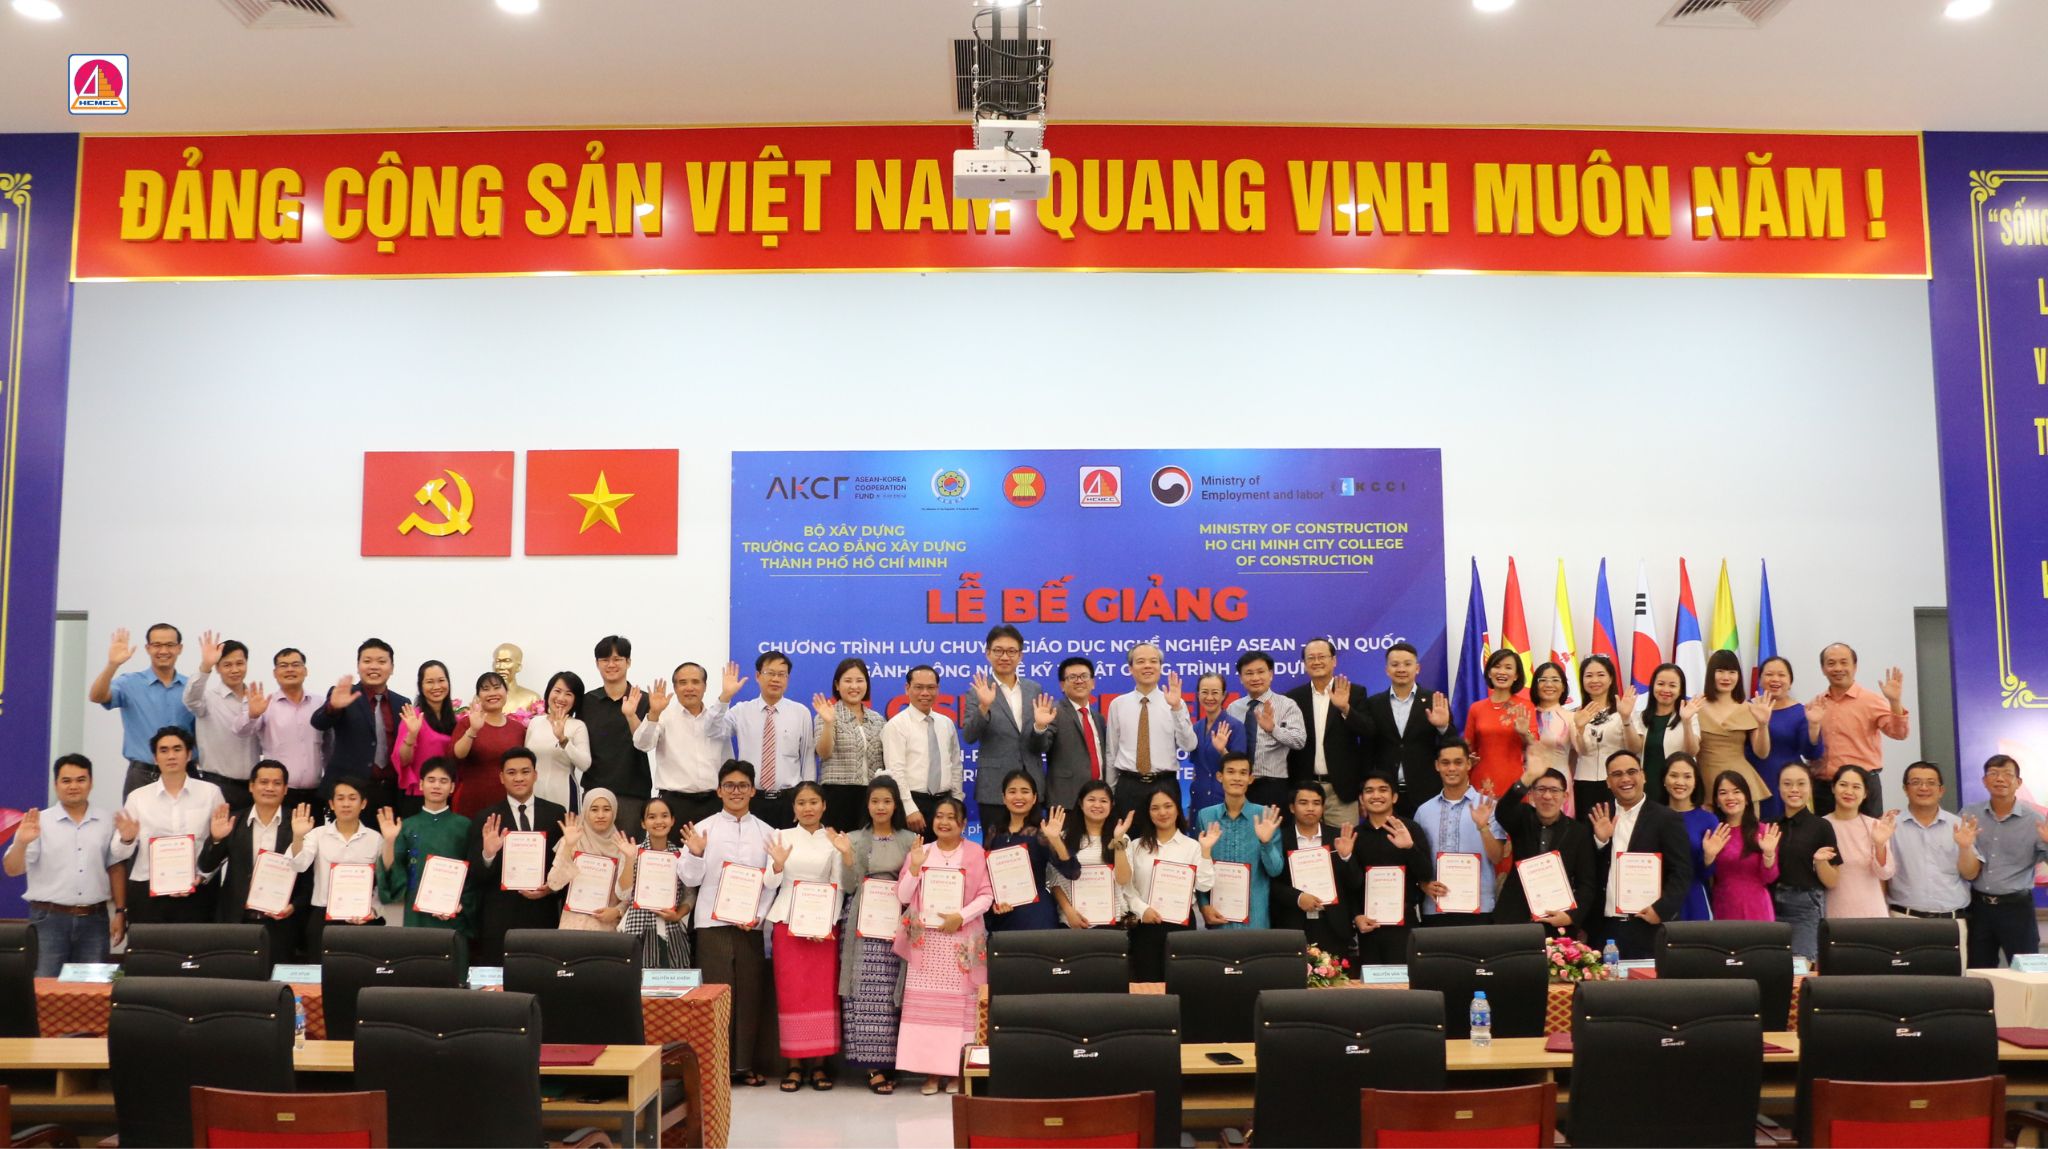 Lễ Bế Giảng Chương Trình Lưu Chuyển GDNN ASEAN - Hàn Quốc Ngành Công Nghệ Kỹ Thuật Công Trình Xây Dựng